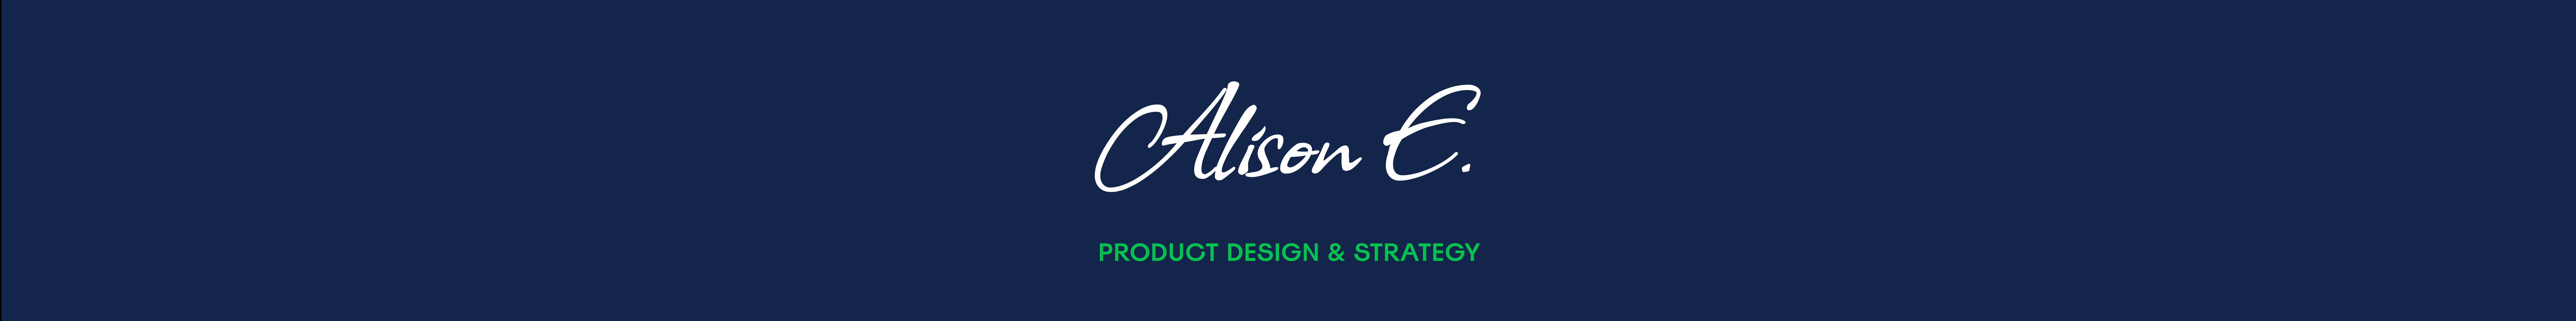 Banner de perfil de Alison Eyo